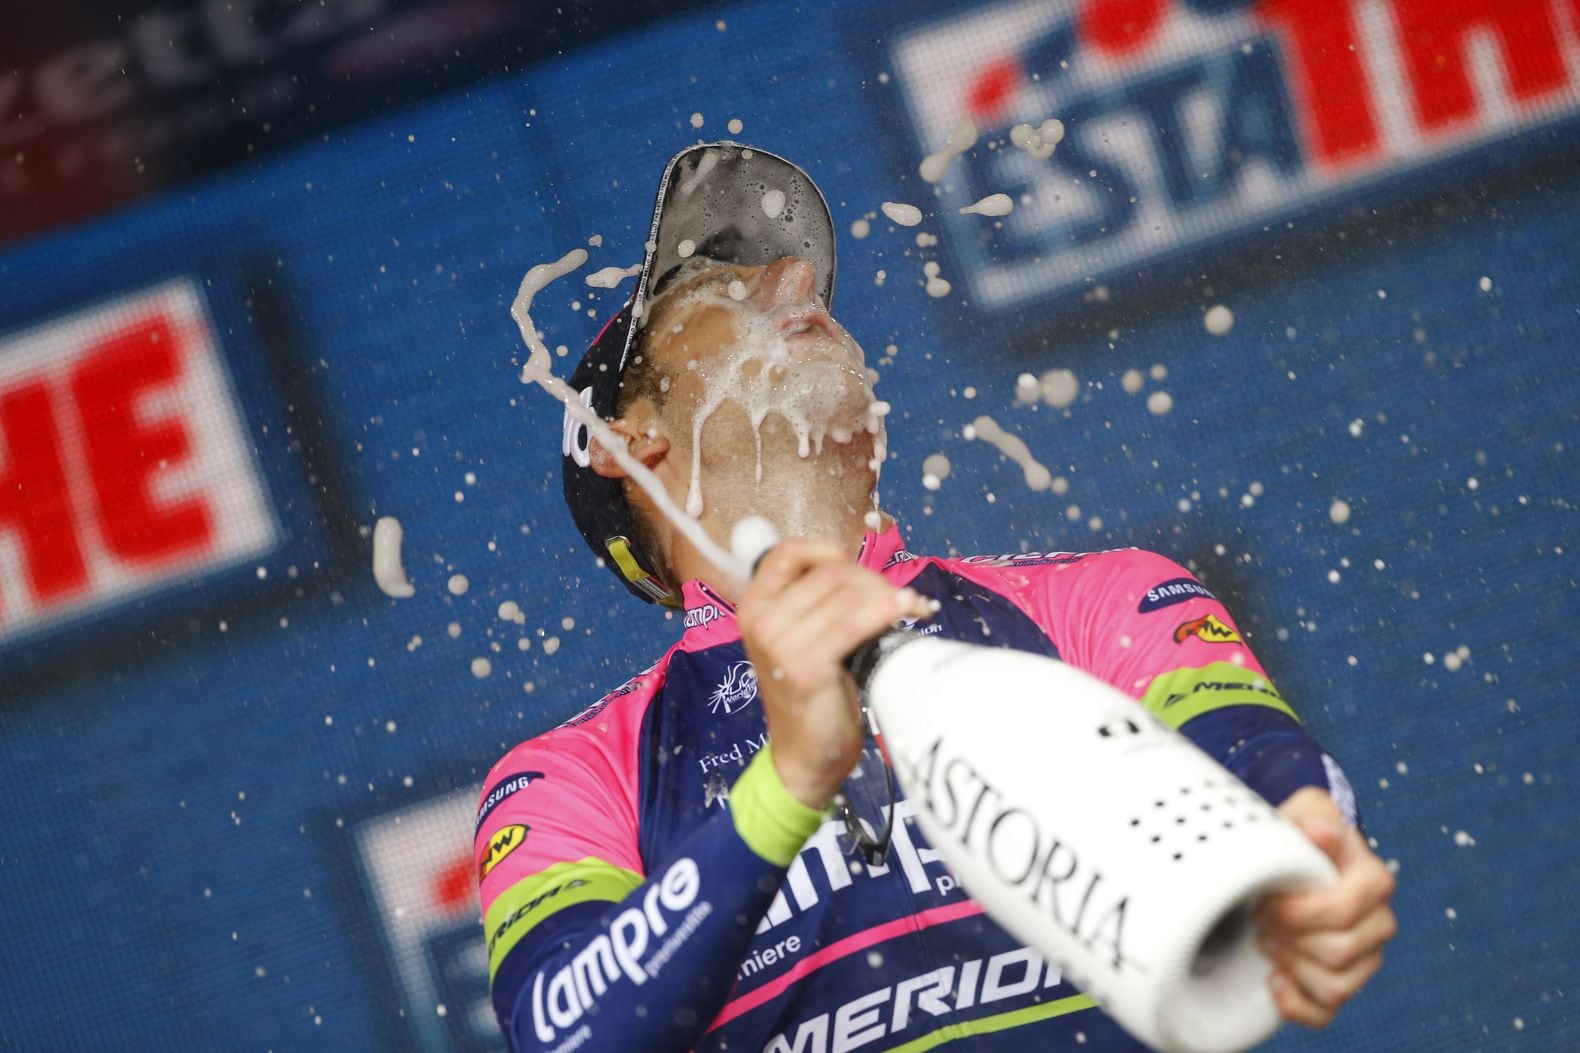 Modolo wint nipt, Contador is roze trui kwijt